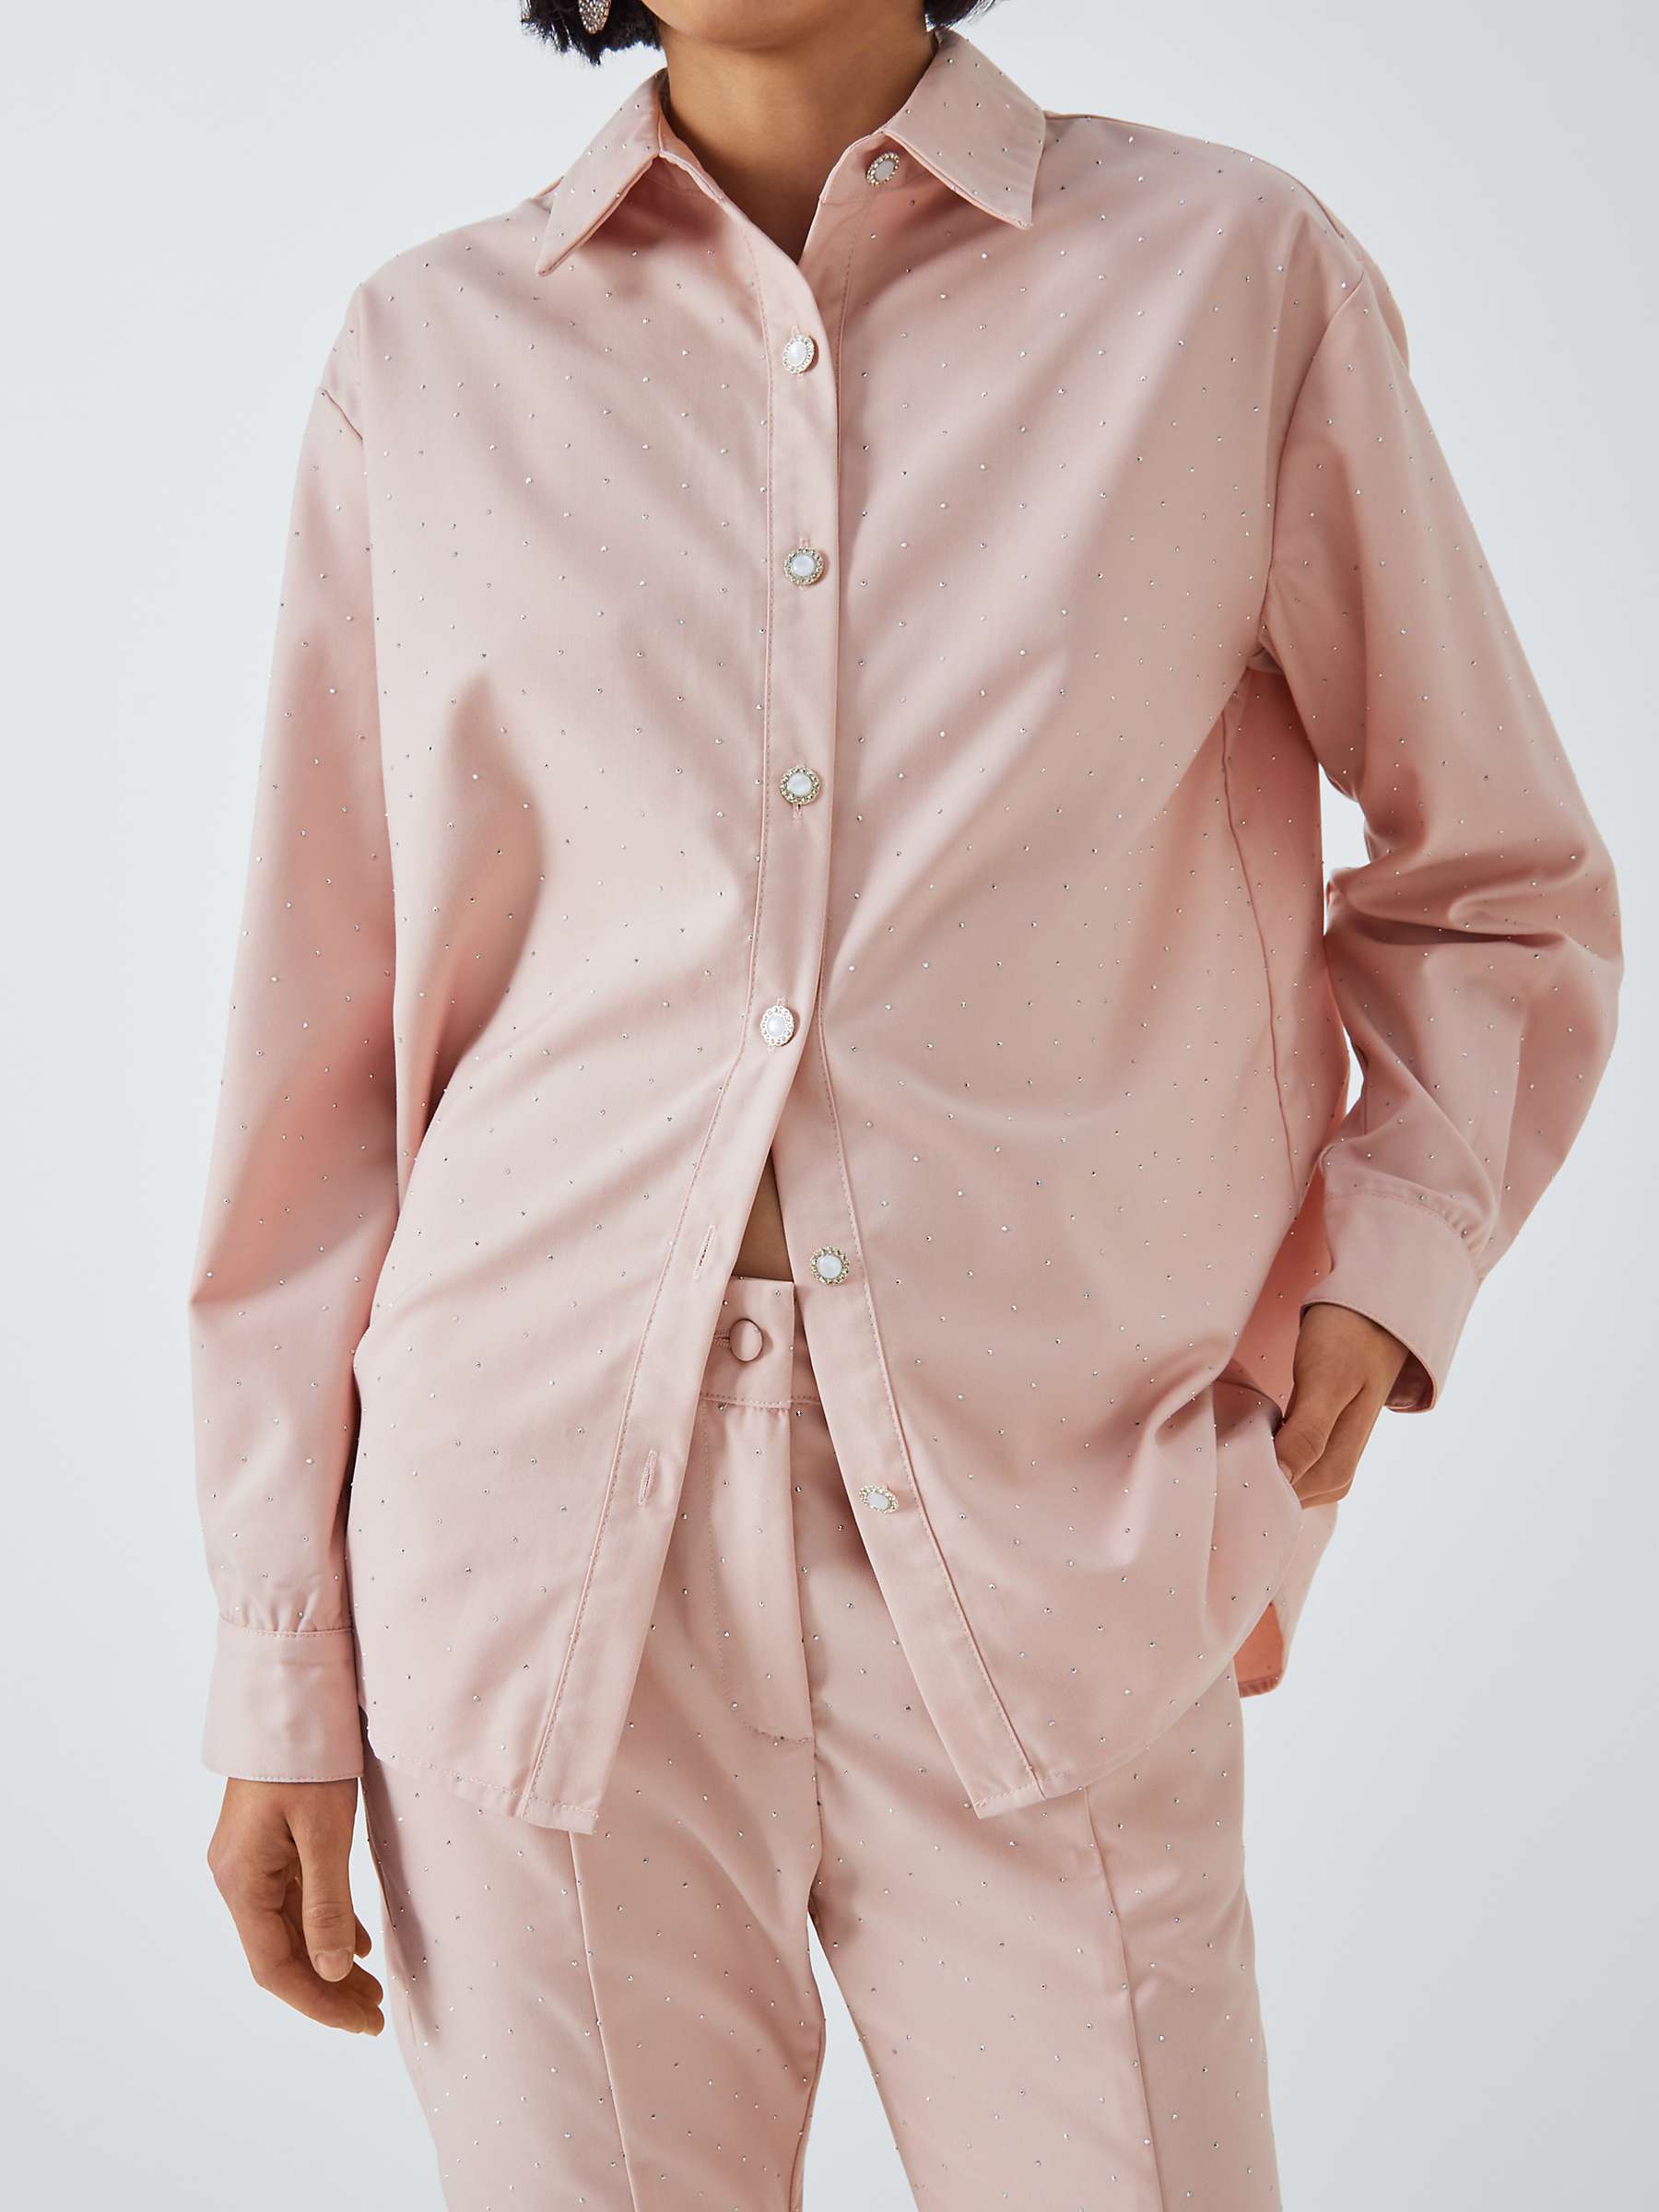 Buy Sister Jane Apple Gem Embellished Shirt, Pink Online at johnlewis.com